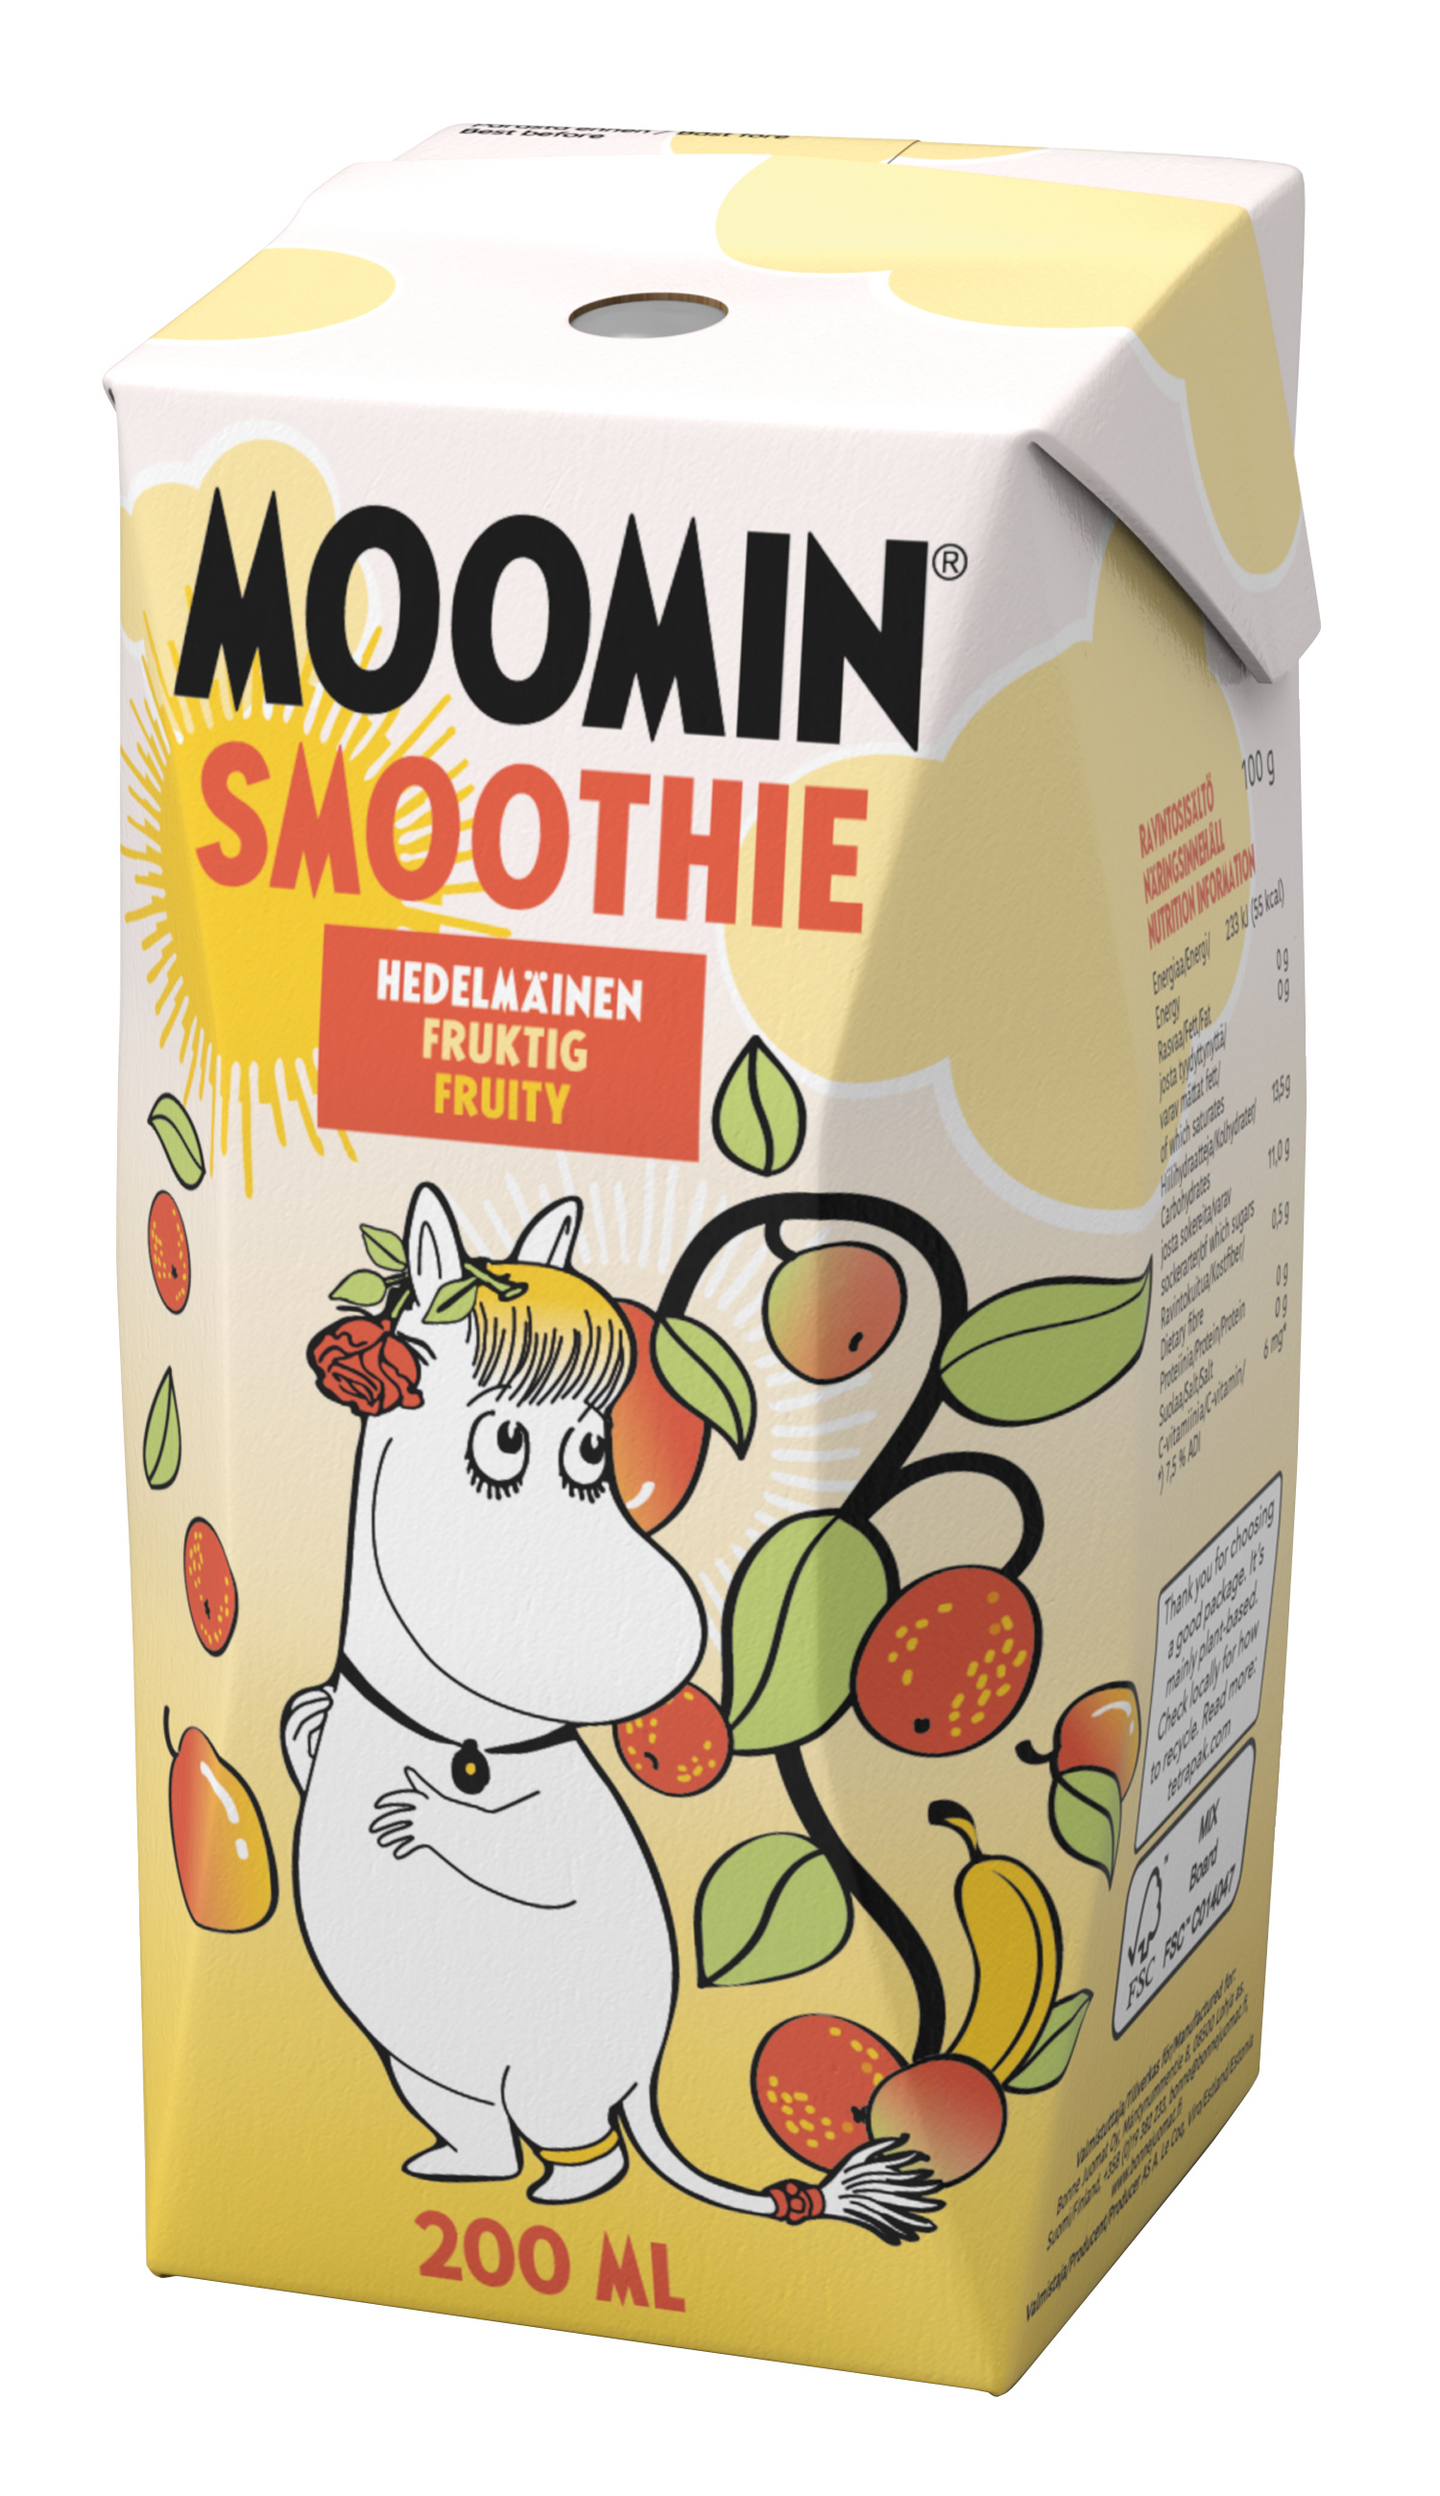 Moomin smoothie 200ml hedelmäinen